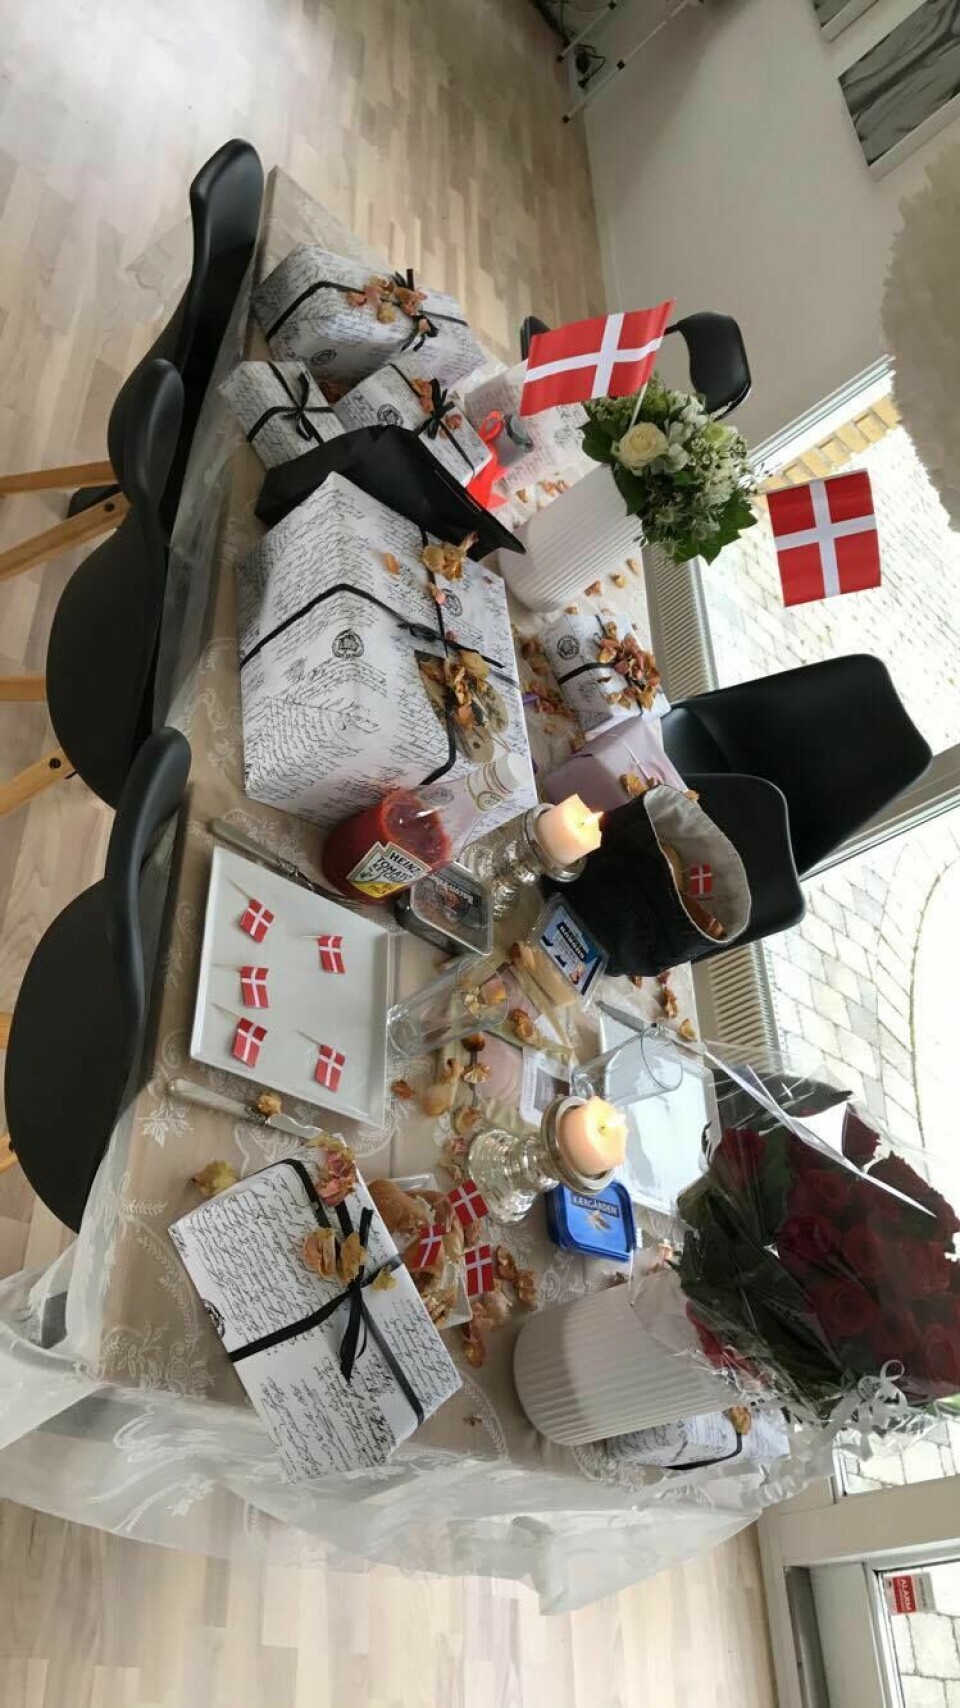 Nicklas havde haft gang i den store planlægning med lækker brunch og fødselsdagsbord - og altså en forlovelesring. (Foto: Privat)